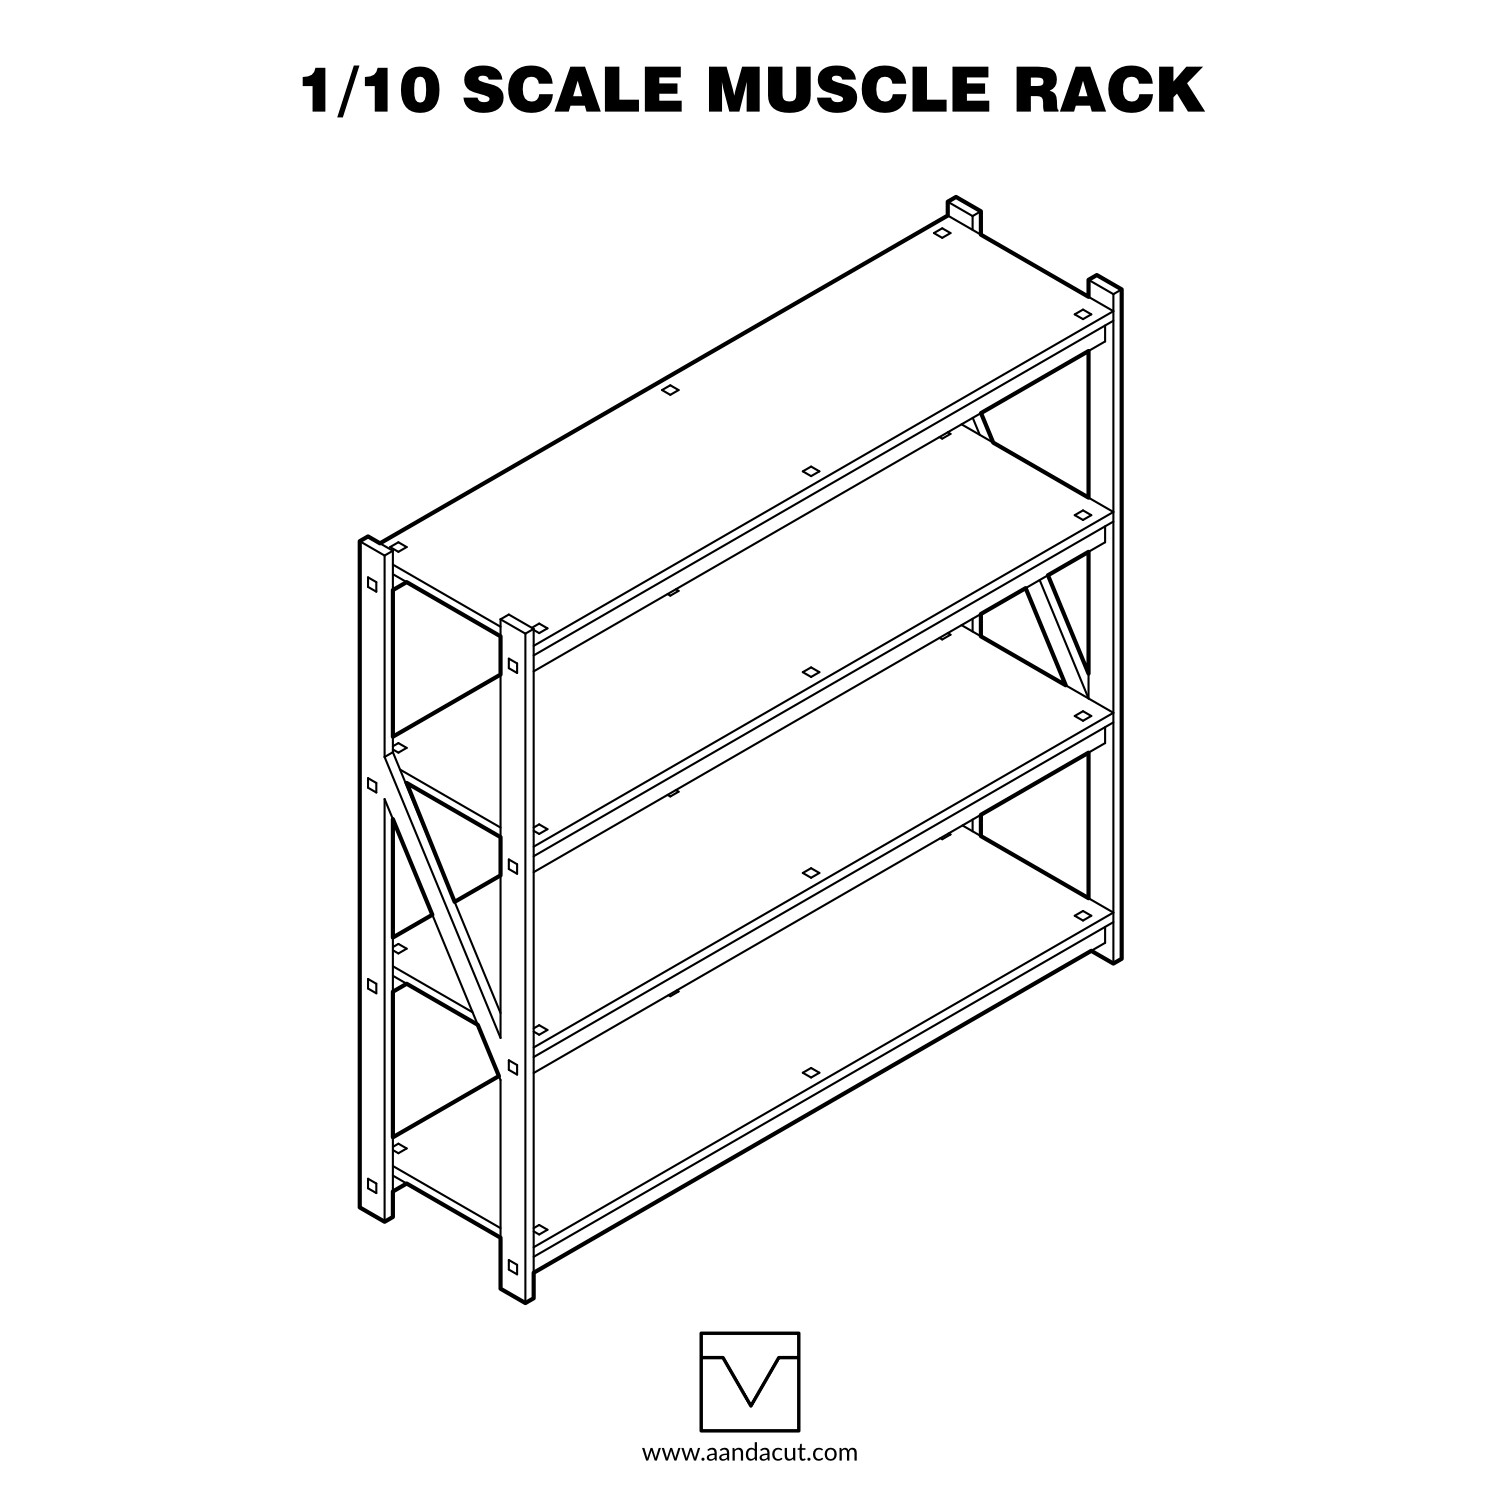 Aanda Cut 1/10 scale muscle rack